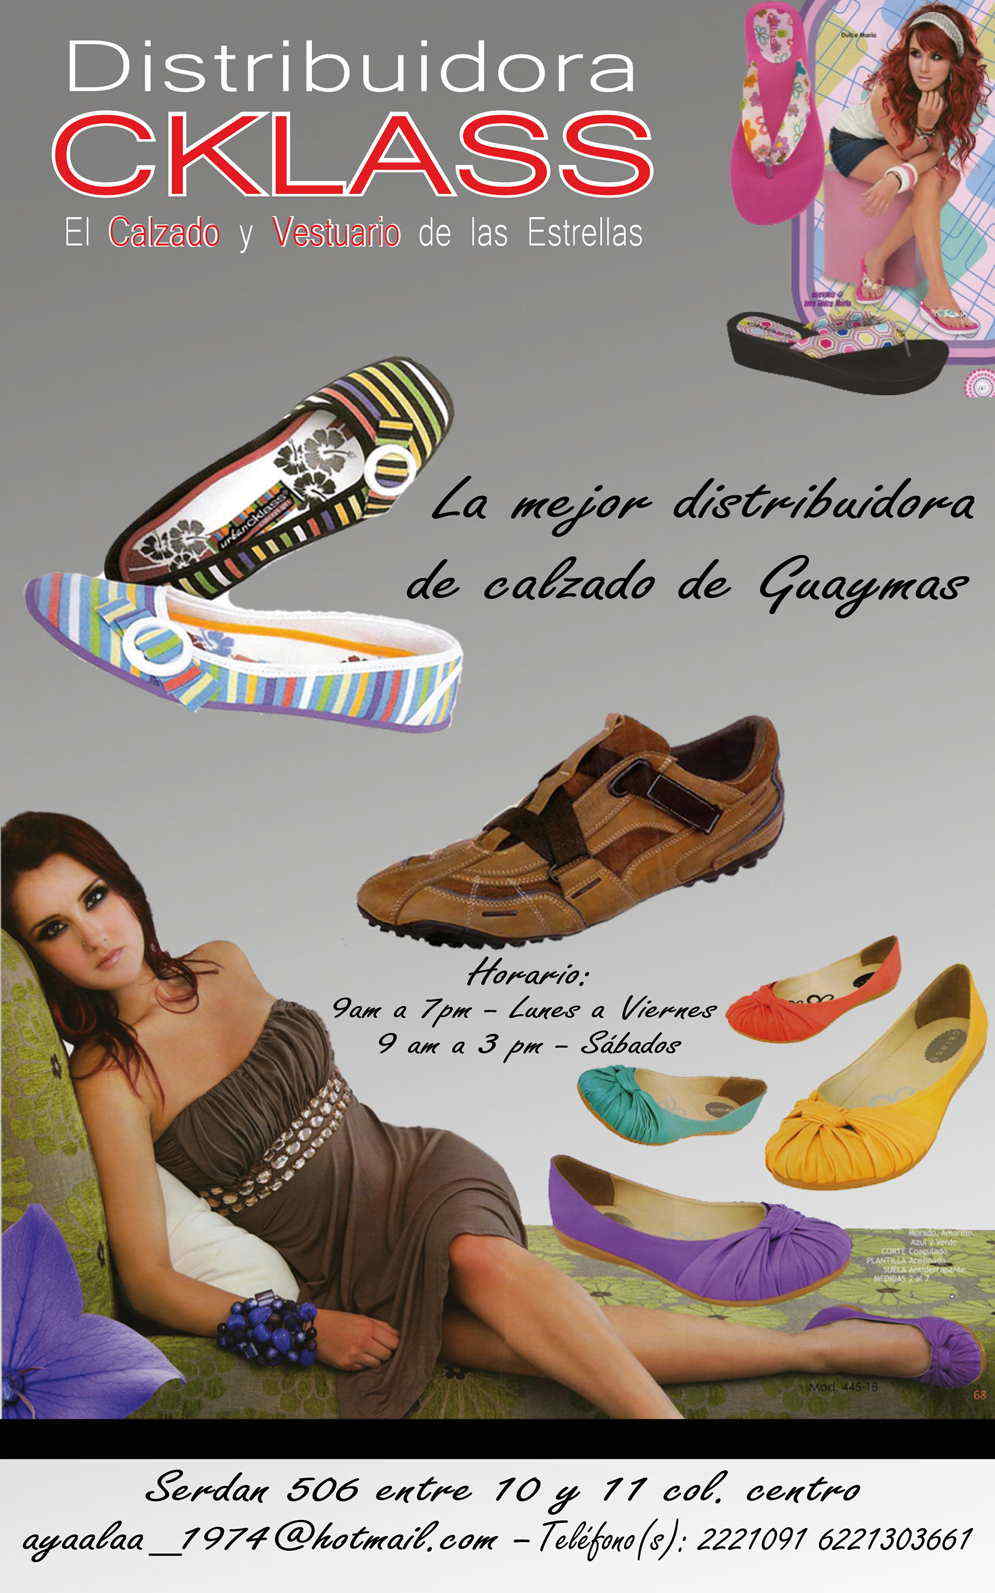 Distribuidora Cklass-La mejor distribuidora de calzado de Guaymas...     